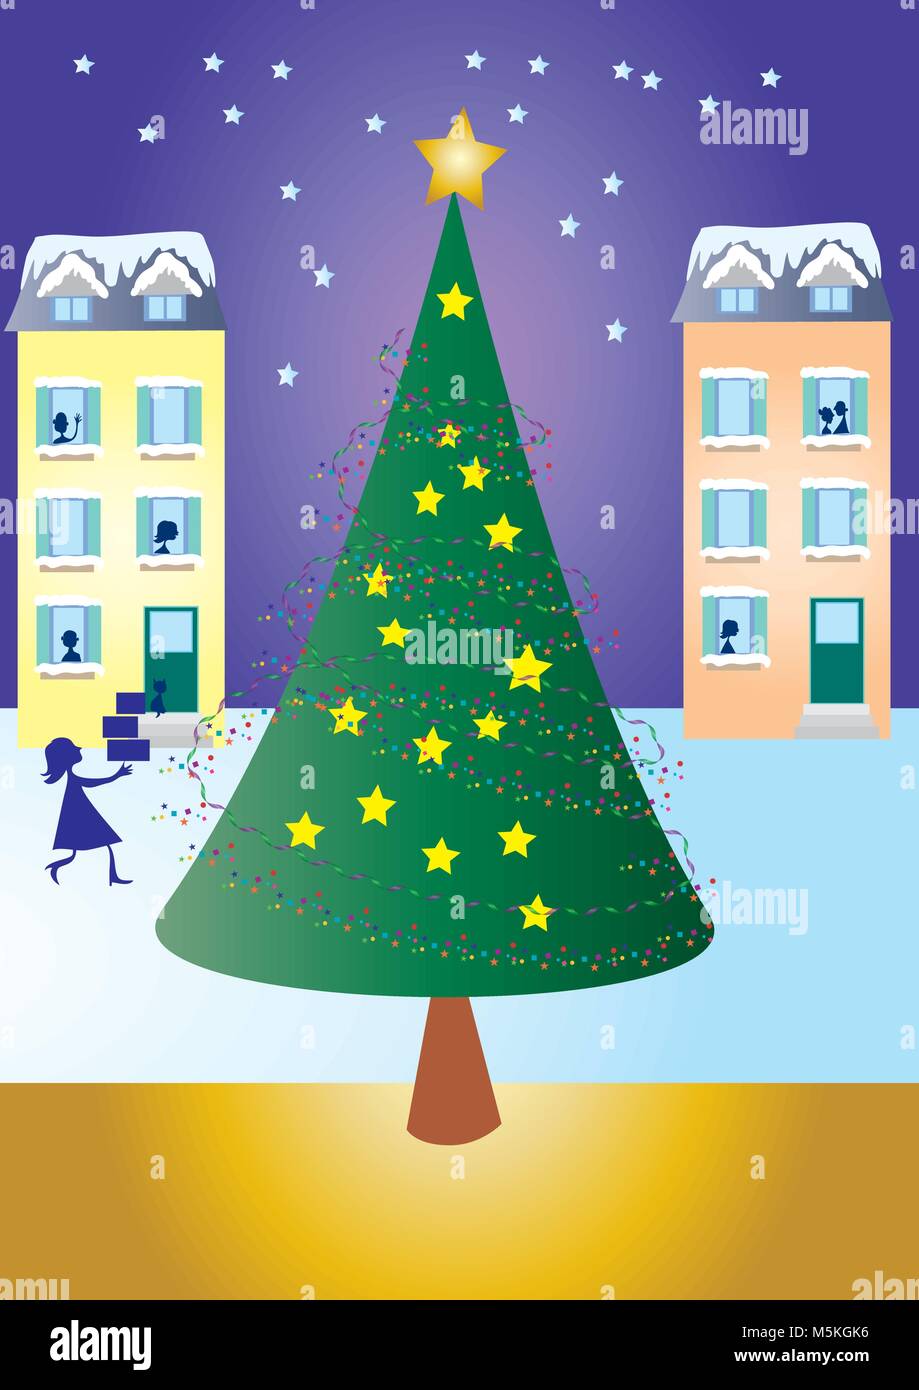 Ein Vektor Illustration eines Weihnachtsbaum mit Häusern im Hintergrund und eine Frau mit Geschenken nach Hause kommt. Stock Vektor